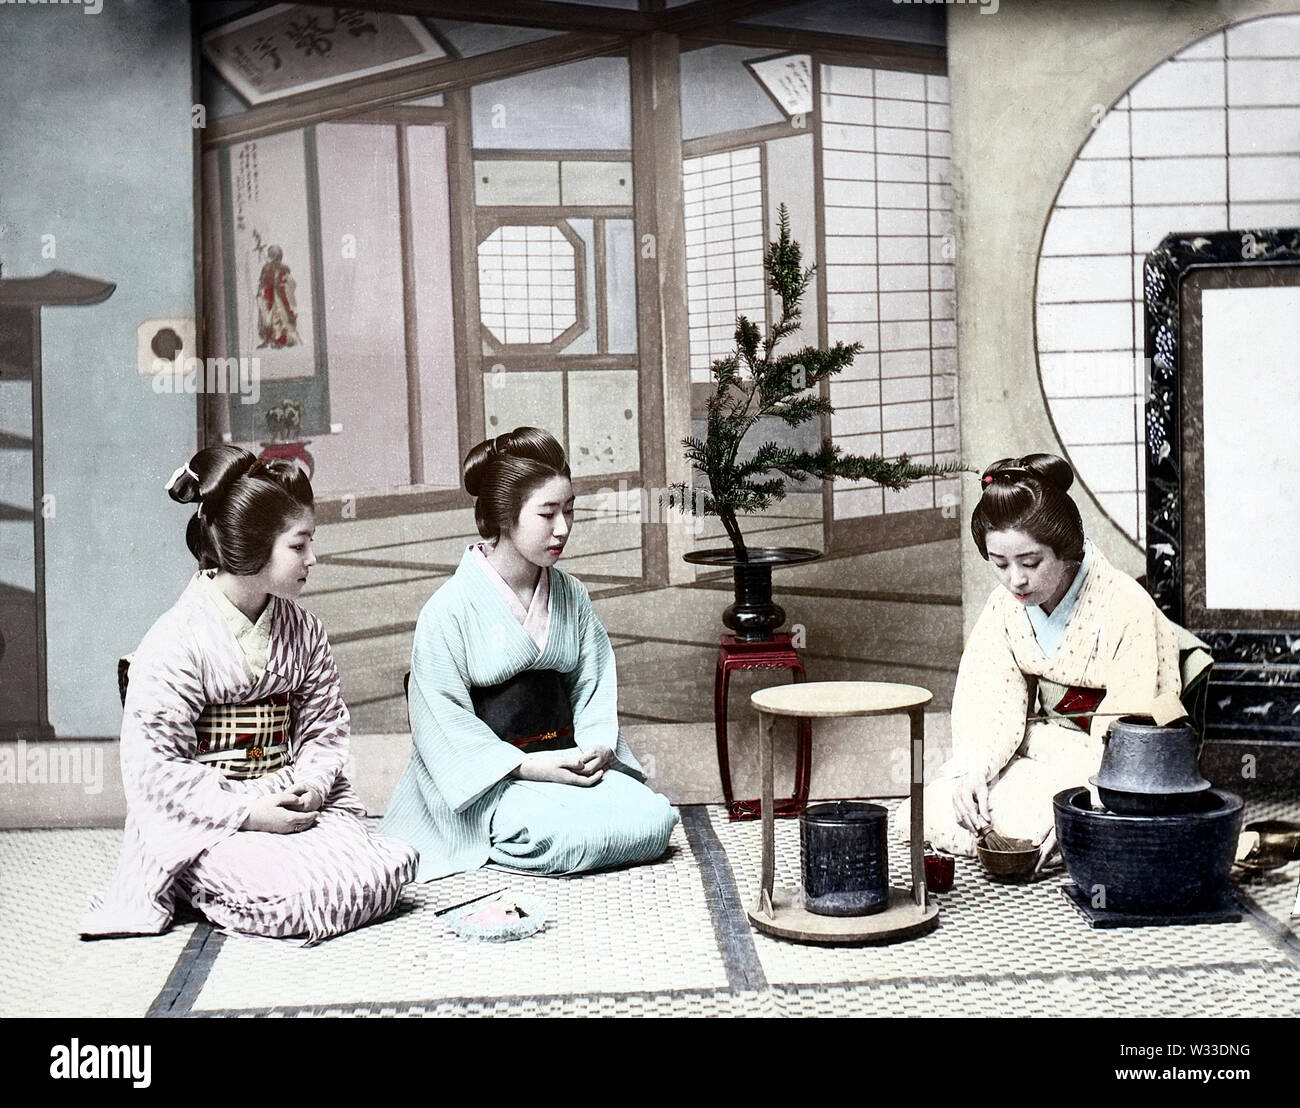 [1890s Japan - Japanische Teezeremonie] - Frauen im Kimono und traditionelle Frisur genießen eine Teezeremonie. 19 Vintage Glas schieben. Stockfoto